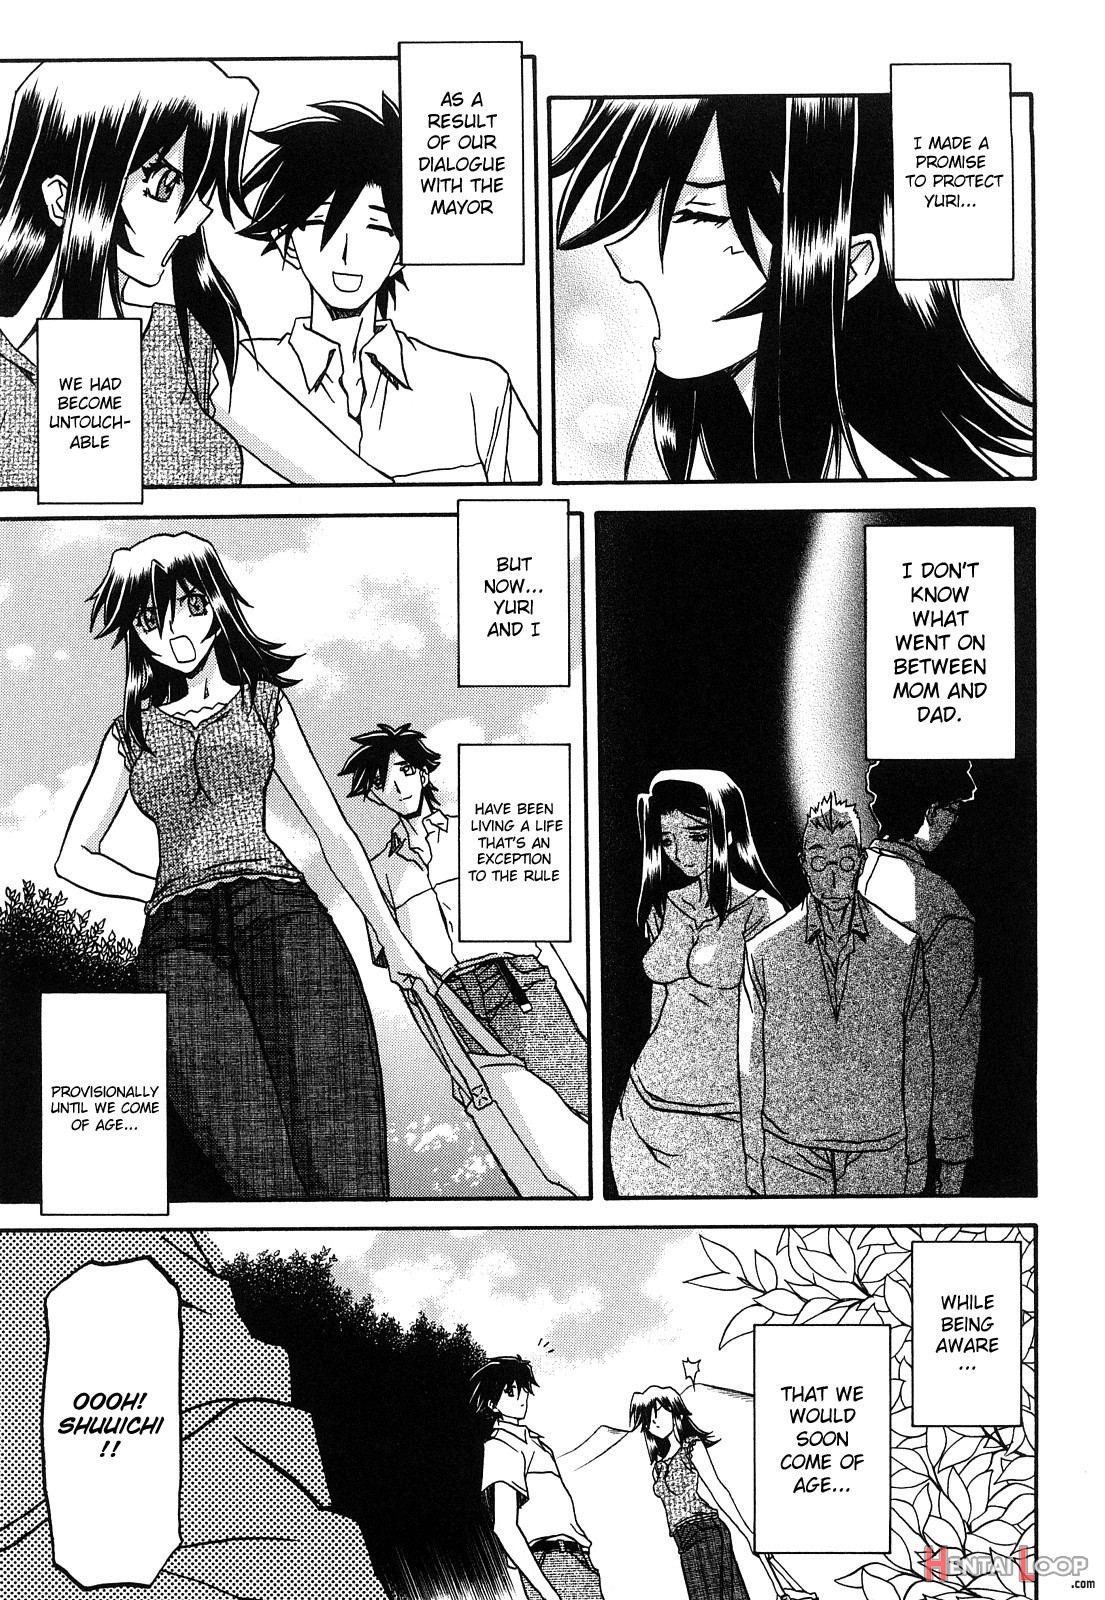 Sayuki No Sato page 271